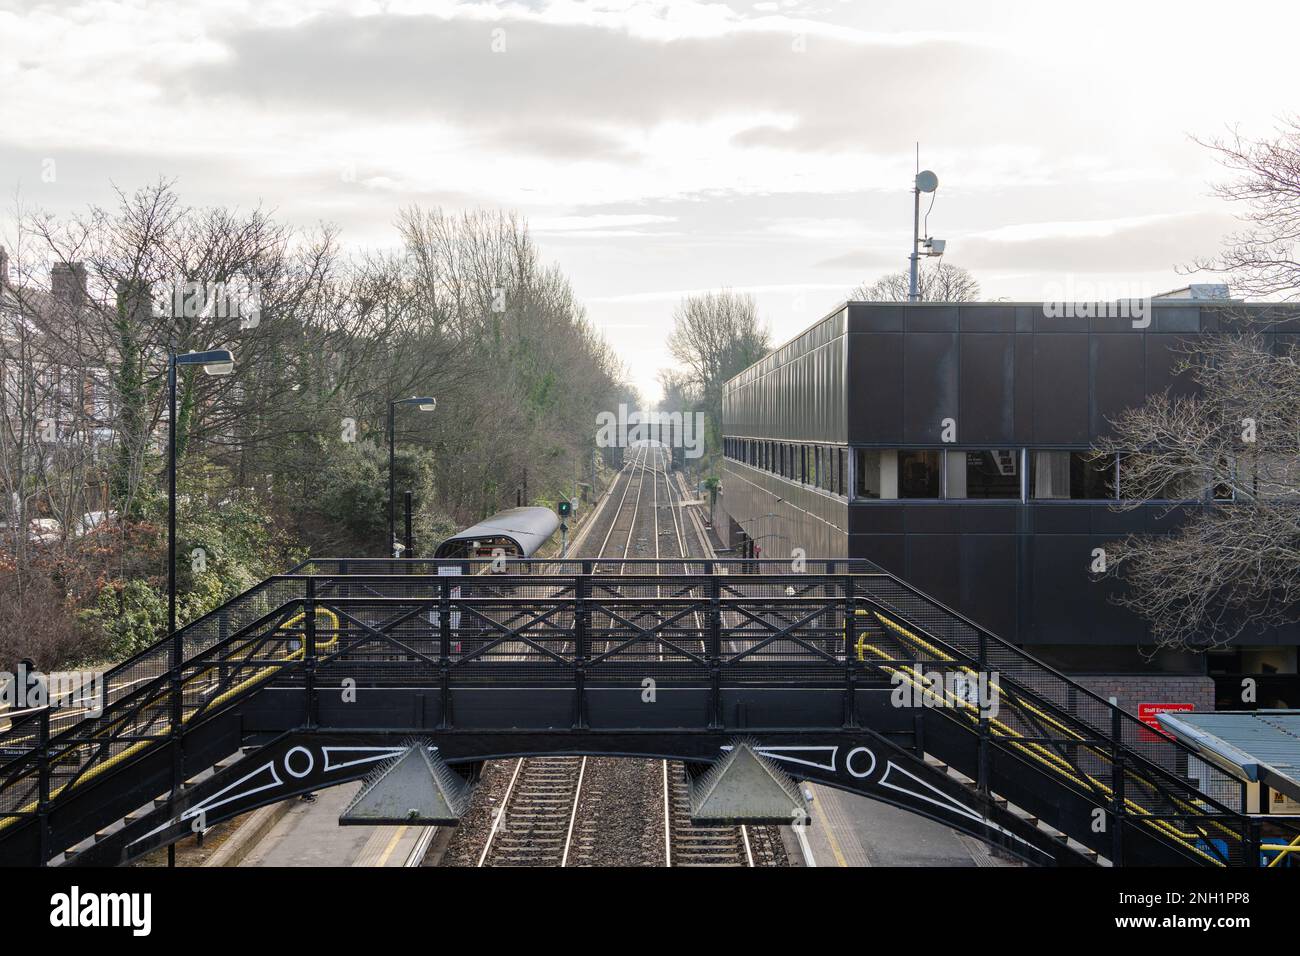 Vista della stazione ferroviaria leggera di South Gosforth sul sistema Tyne and Wear Metro, che si affaccia sul ponte stradale. Newcastle upon Tyne, Regno Unito. Foto Stock